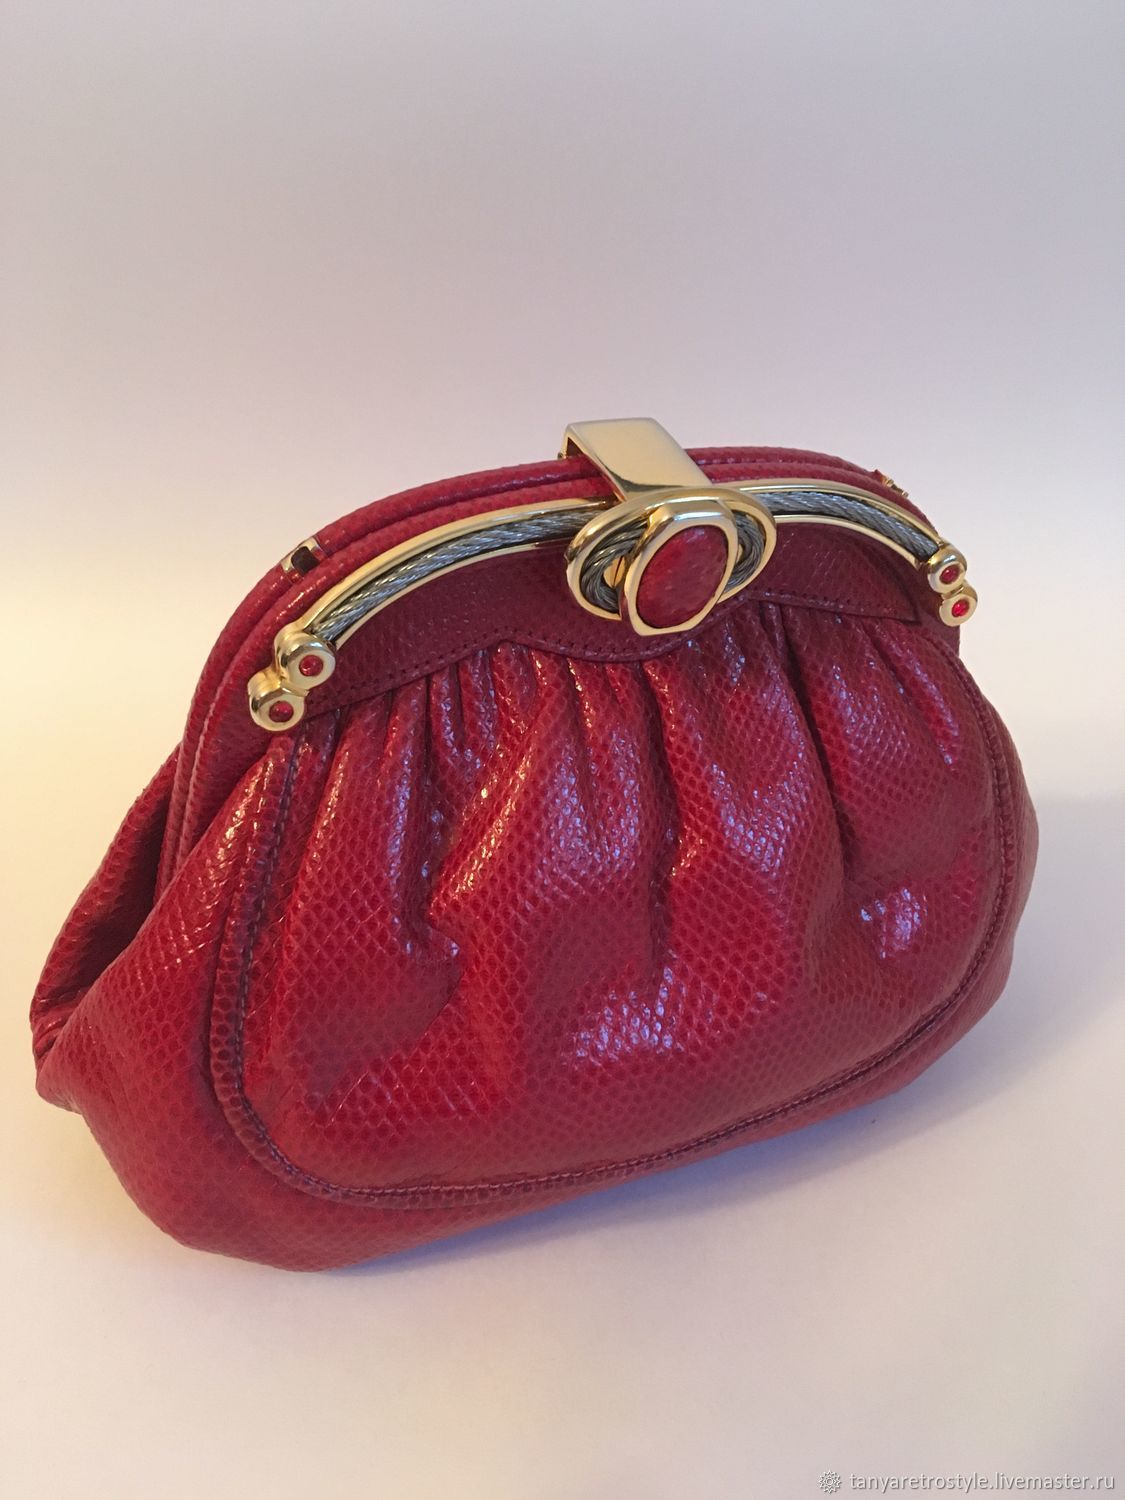 Винтаж: Сумки винтажные: красная сумка из кожи пресноводной змеи  .